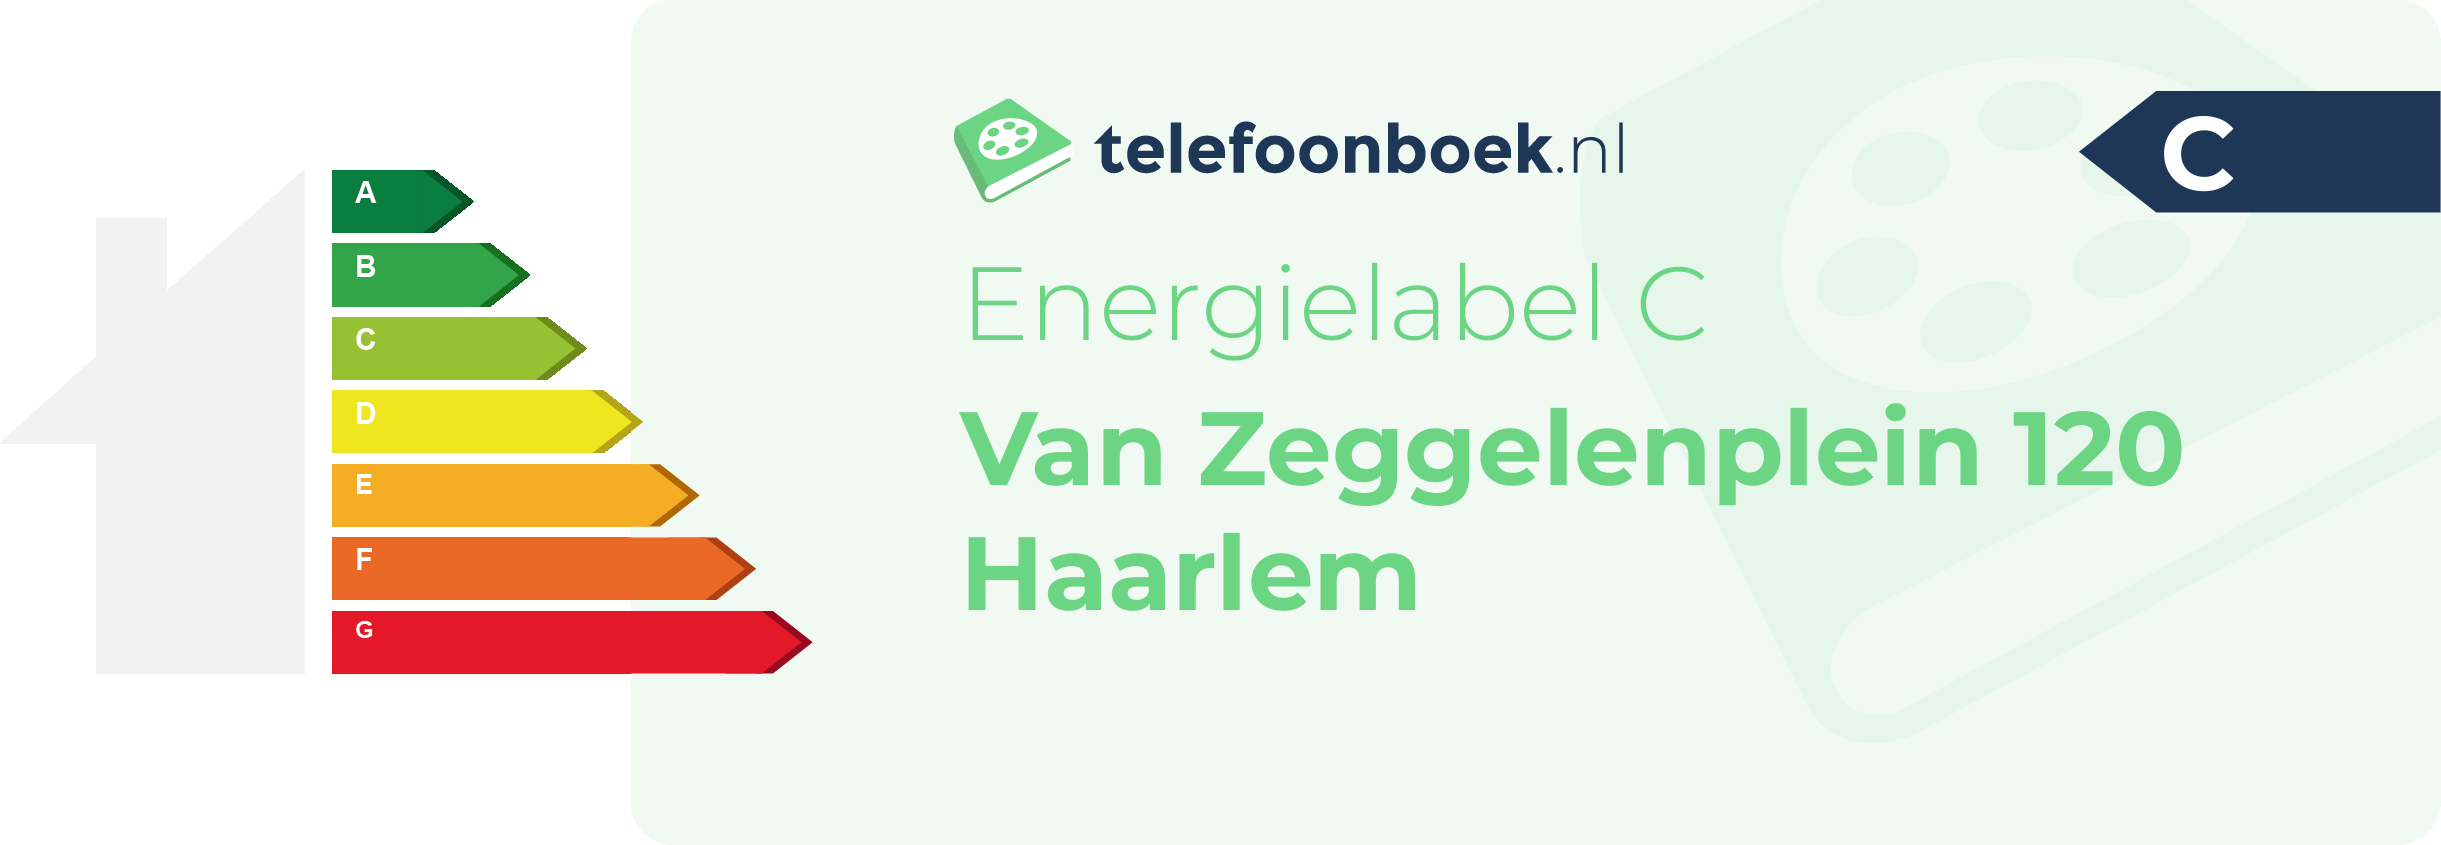 Energielabel Van Zeggelenplein 120 Haarlem